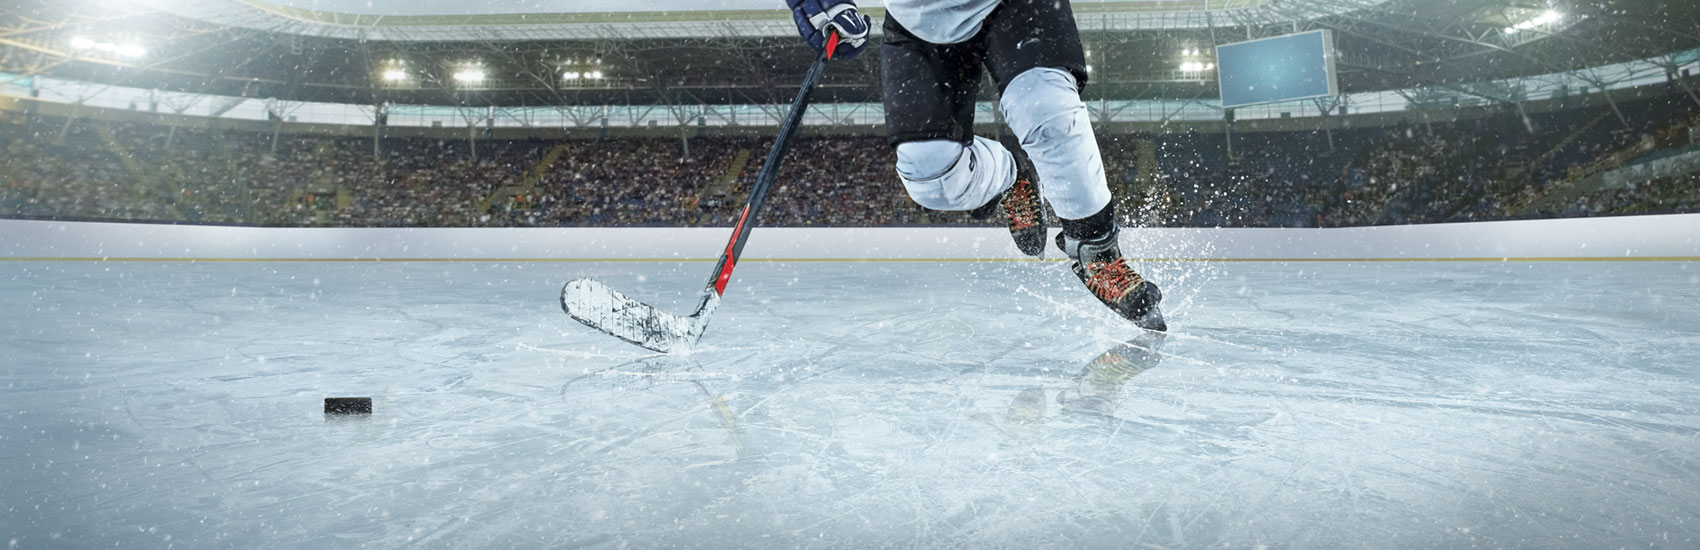 Les Championnats provinciaux scolaires D2 de hockey à Châteauguay et Vaudreuil-Dorion